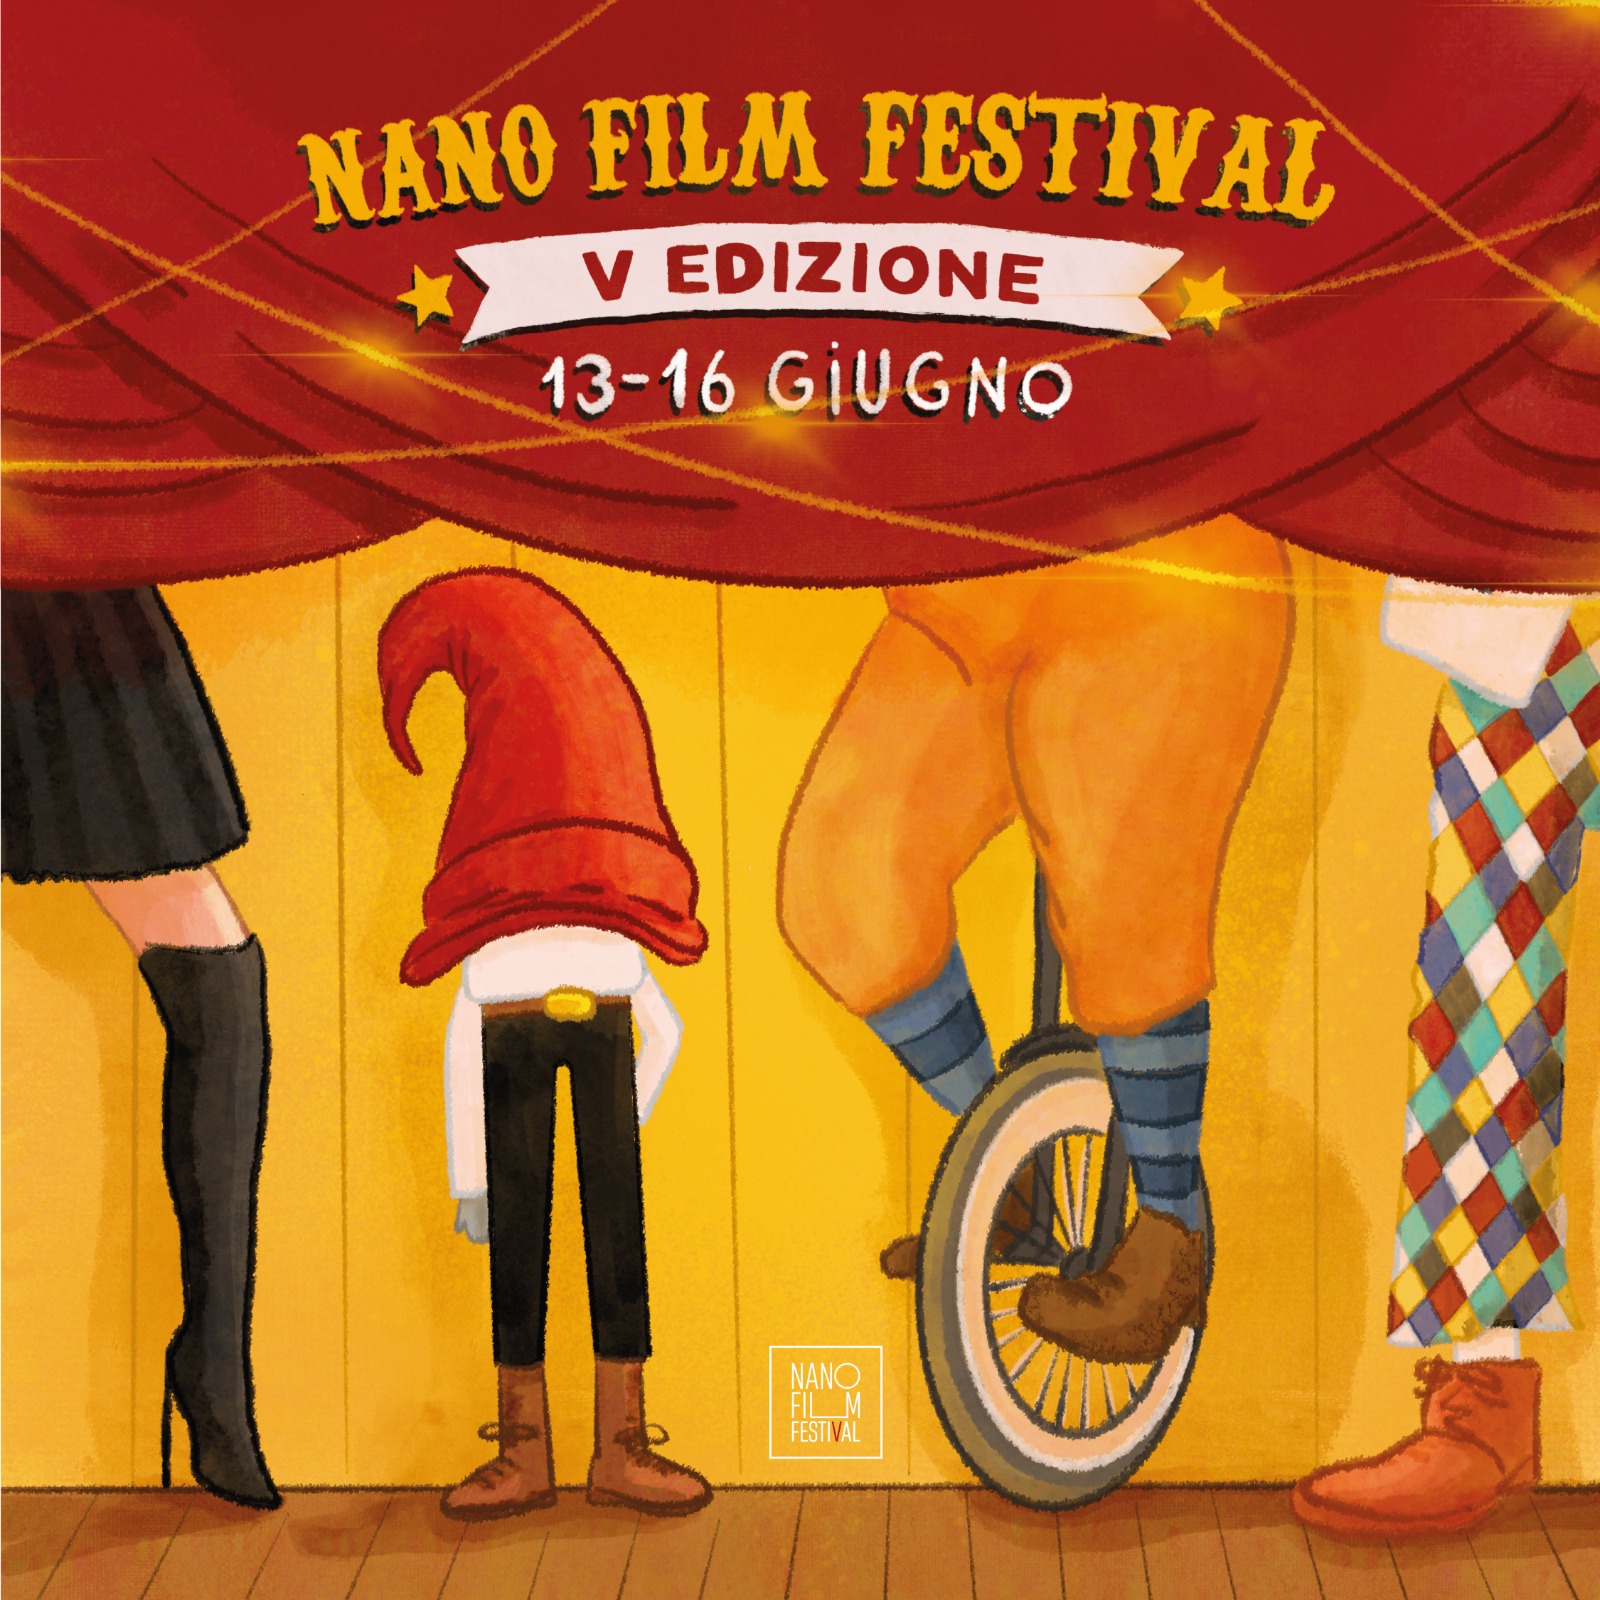 NaNo film festival